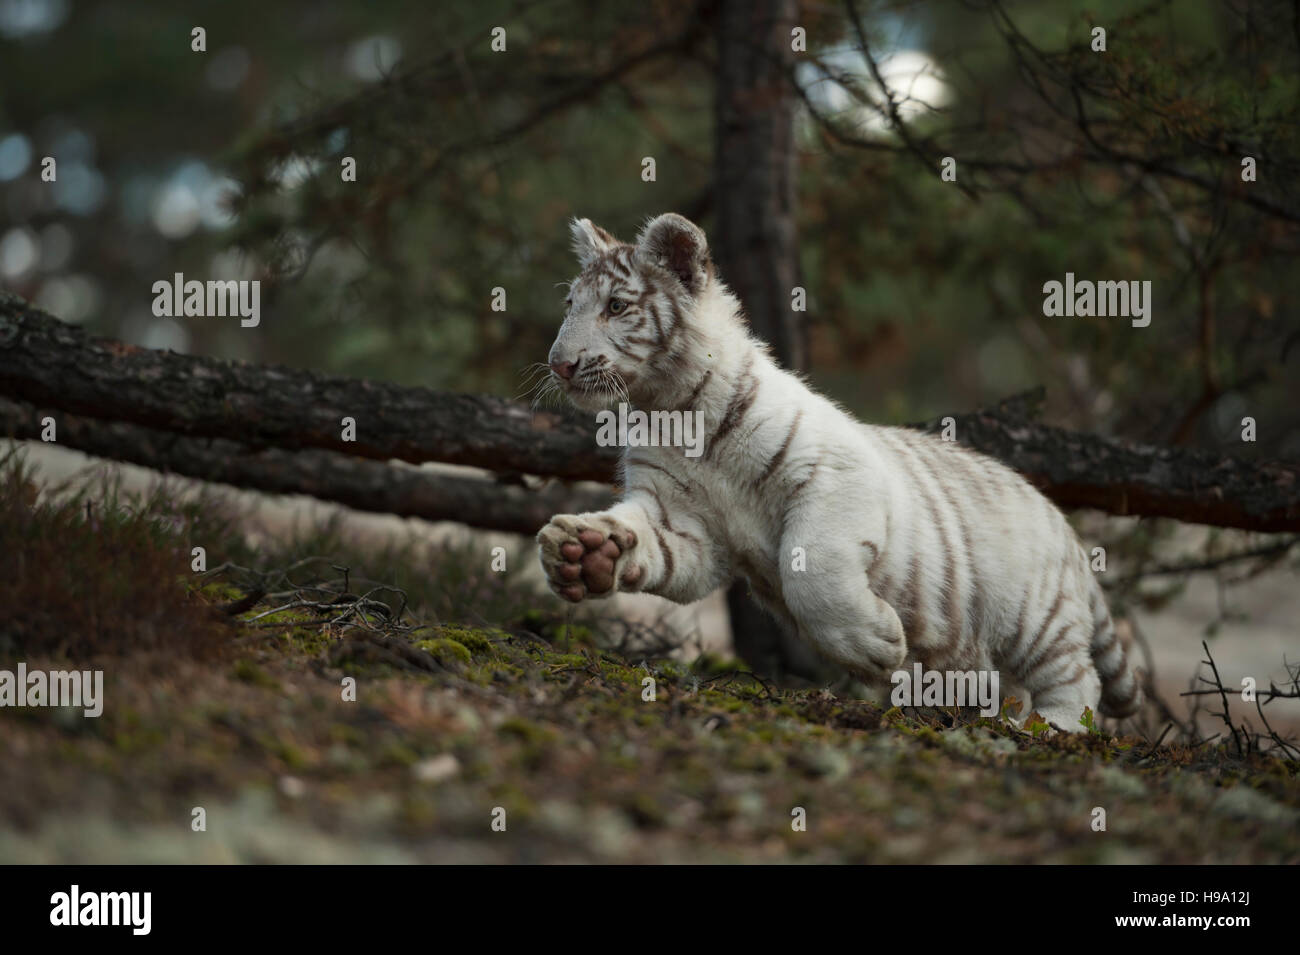 Tigre du Bengale Royal / Koenigstiger ( Panthera tigris ), forme blanche, courir, sauter à travers une forêt naturelle, faible point de vue. Banque D'Images